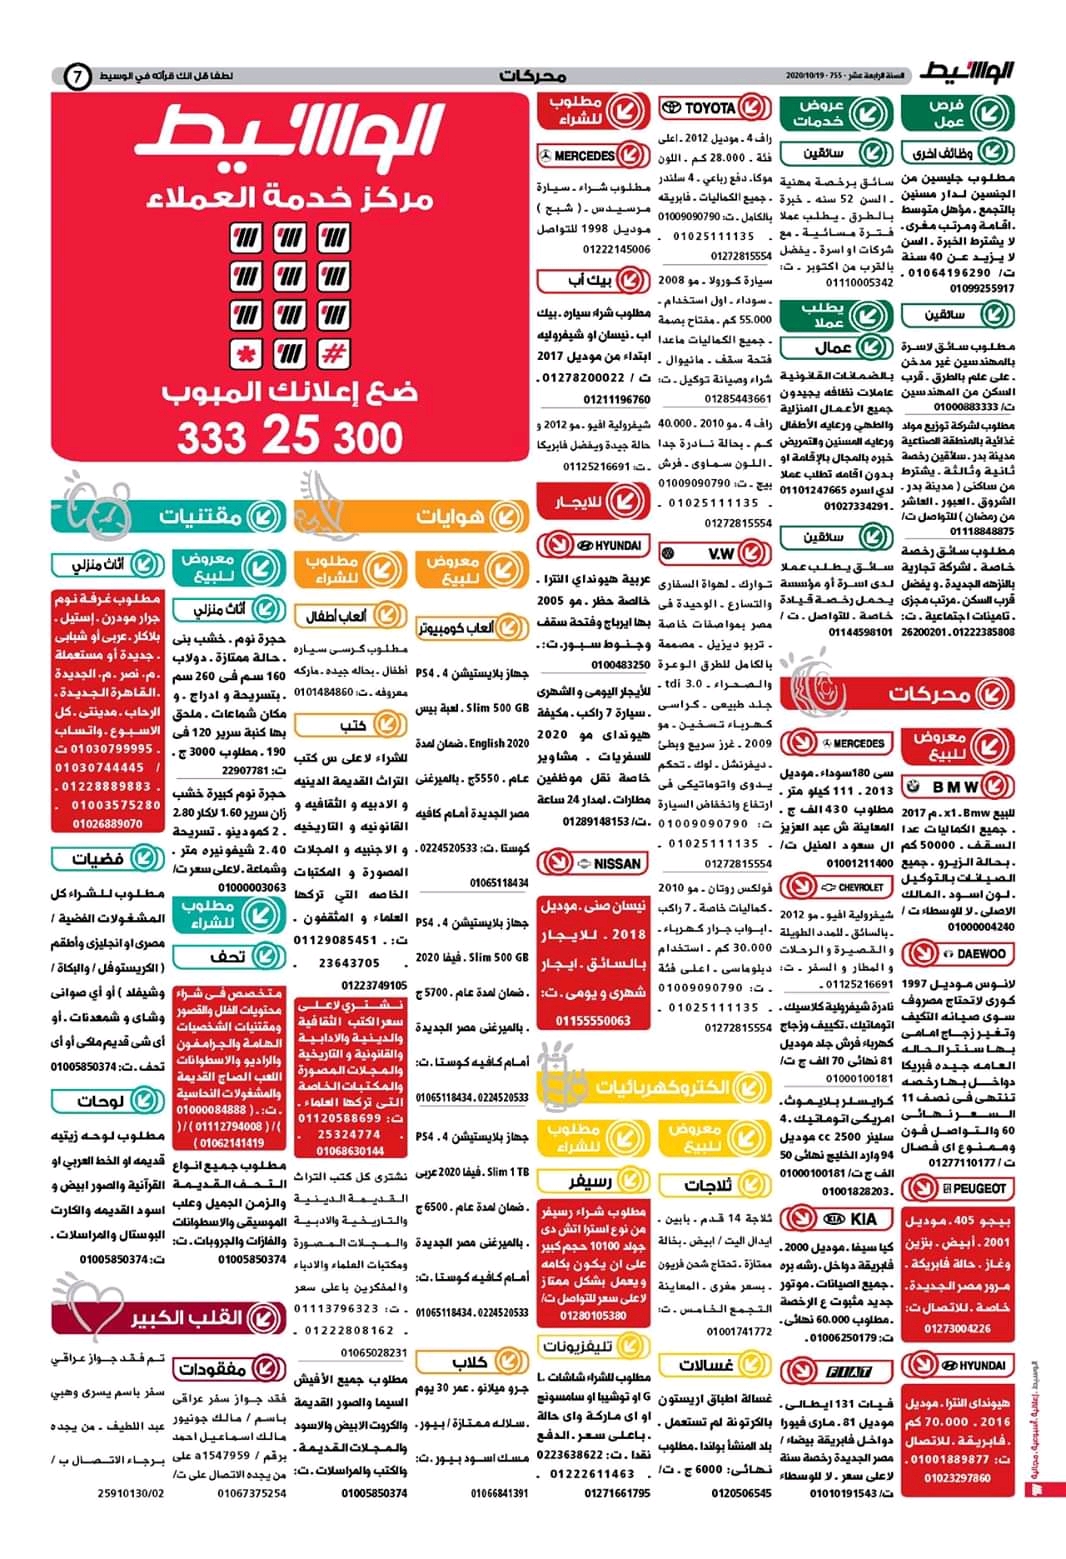 وظائف الوسيط و اعلانات مصر الاثنين 19 اكتوبر 2020 وسيط الاثنين